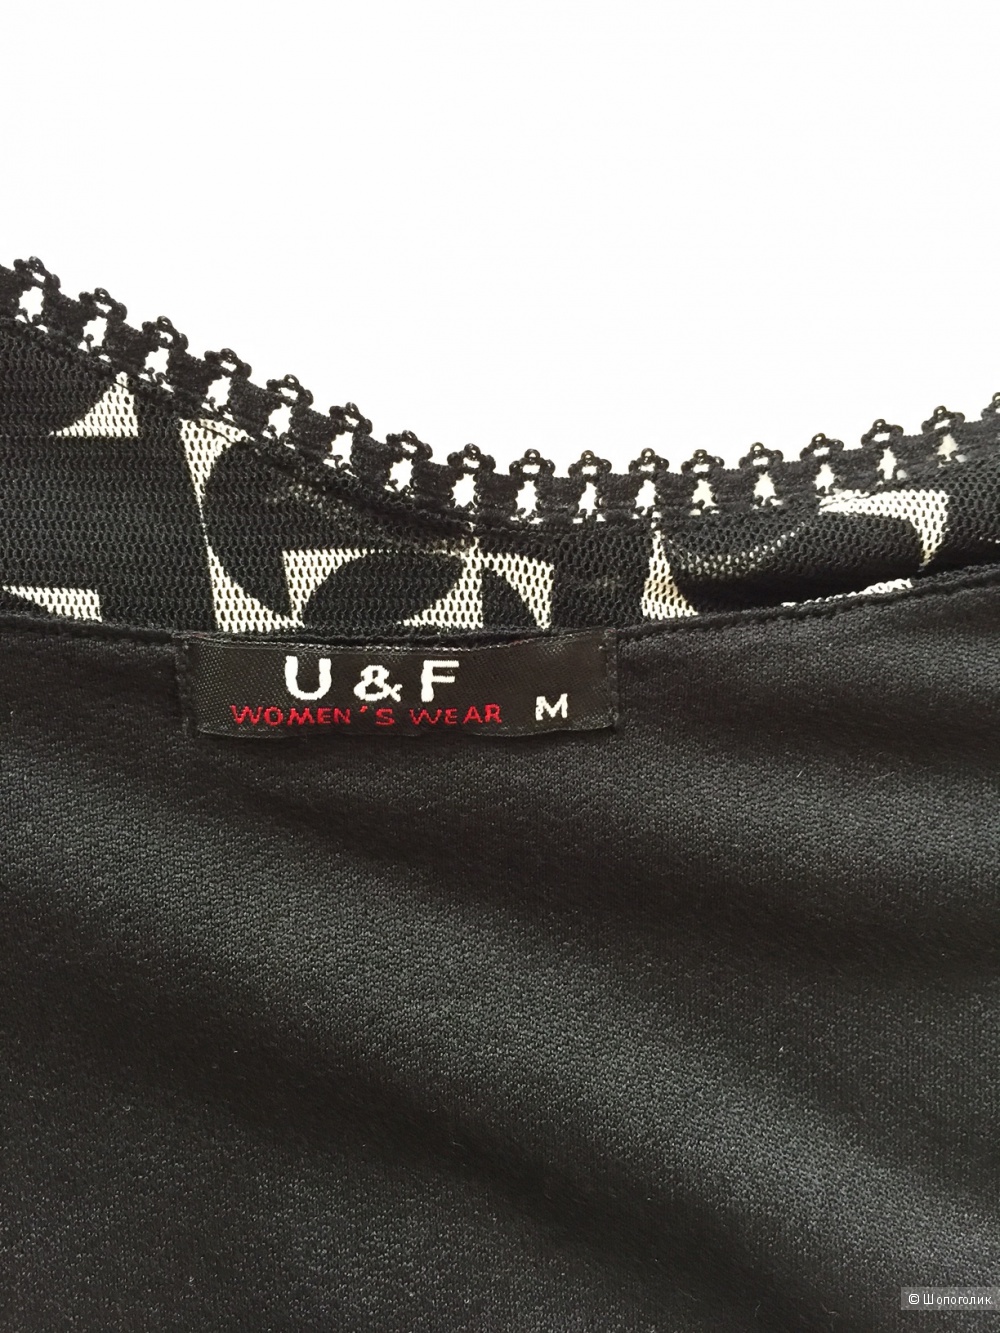 Коктельное платье в бельевом стиле марка U&F размер M